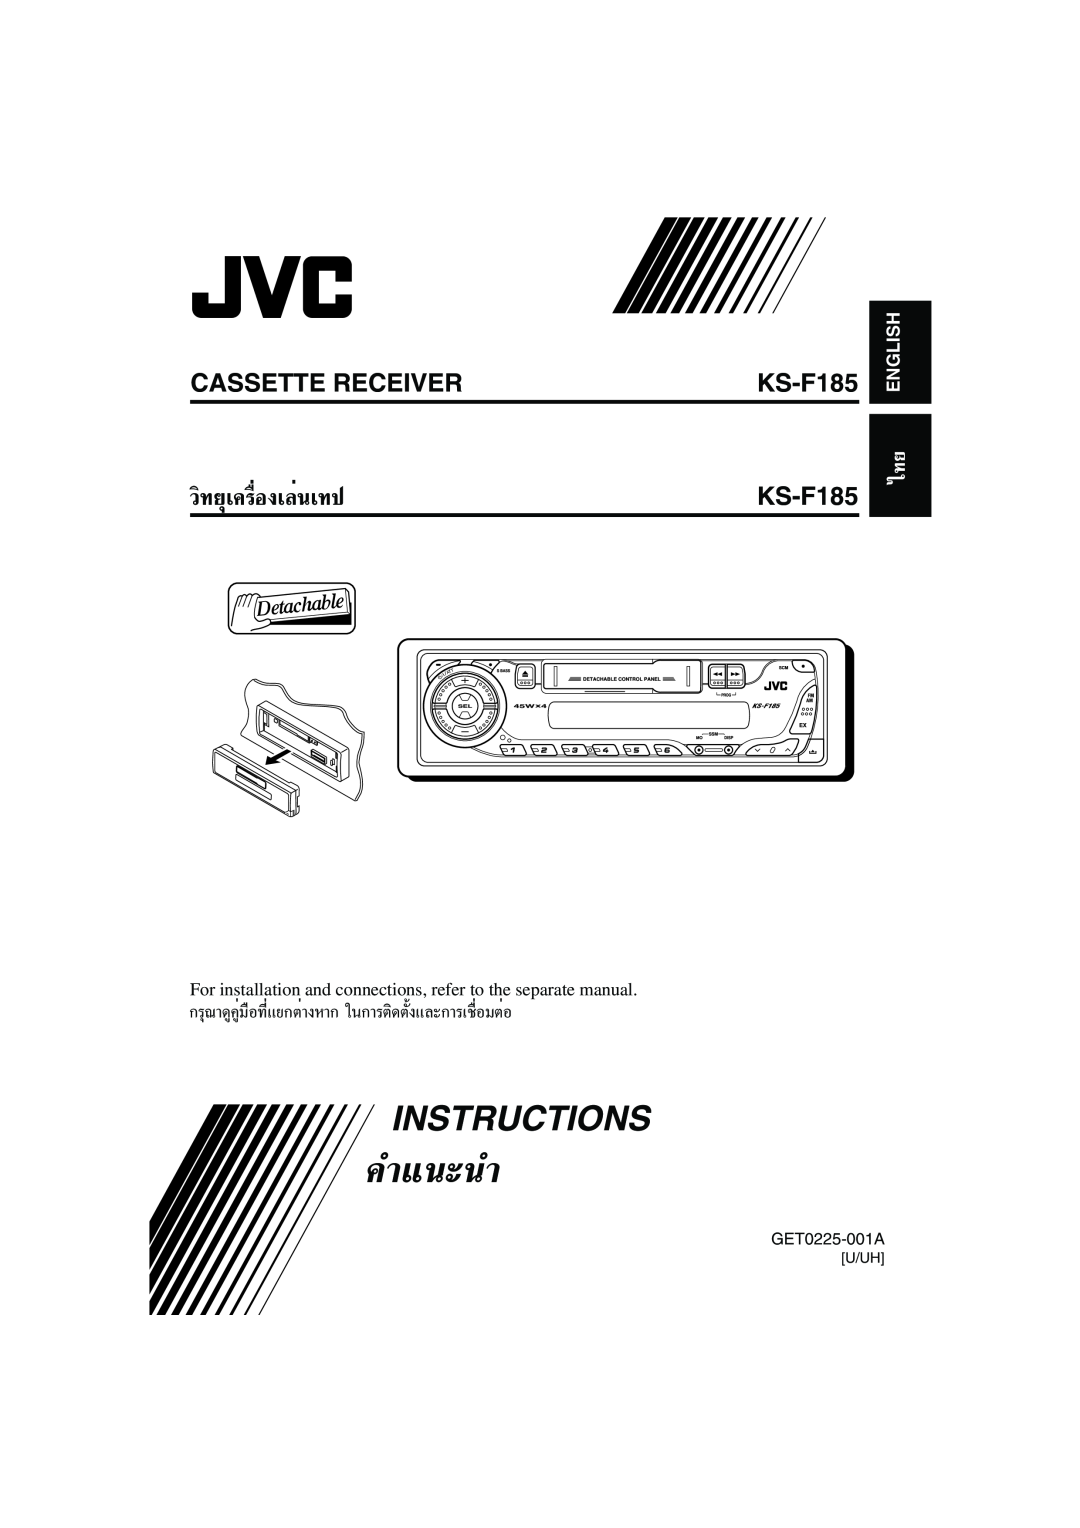 JVC KS-F185 manual Instructions, «‘∑¬ÿ‡§√ËÕß‡≈Ëπ‡∑ª, Cassette Receiver, §”·π-π”, English 